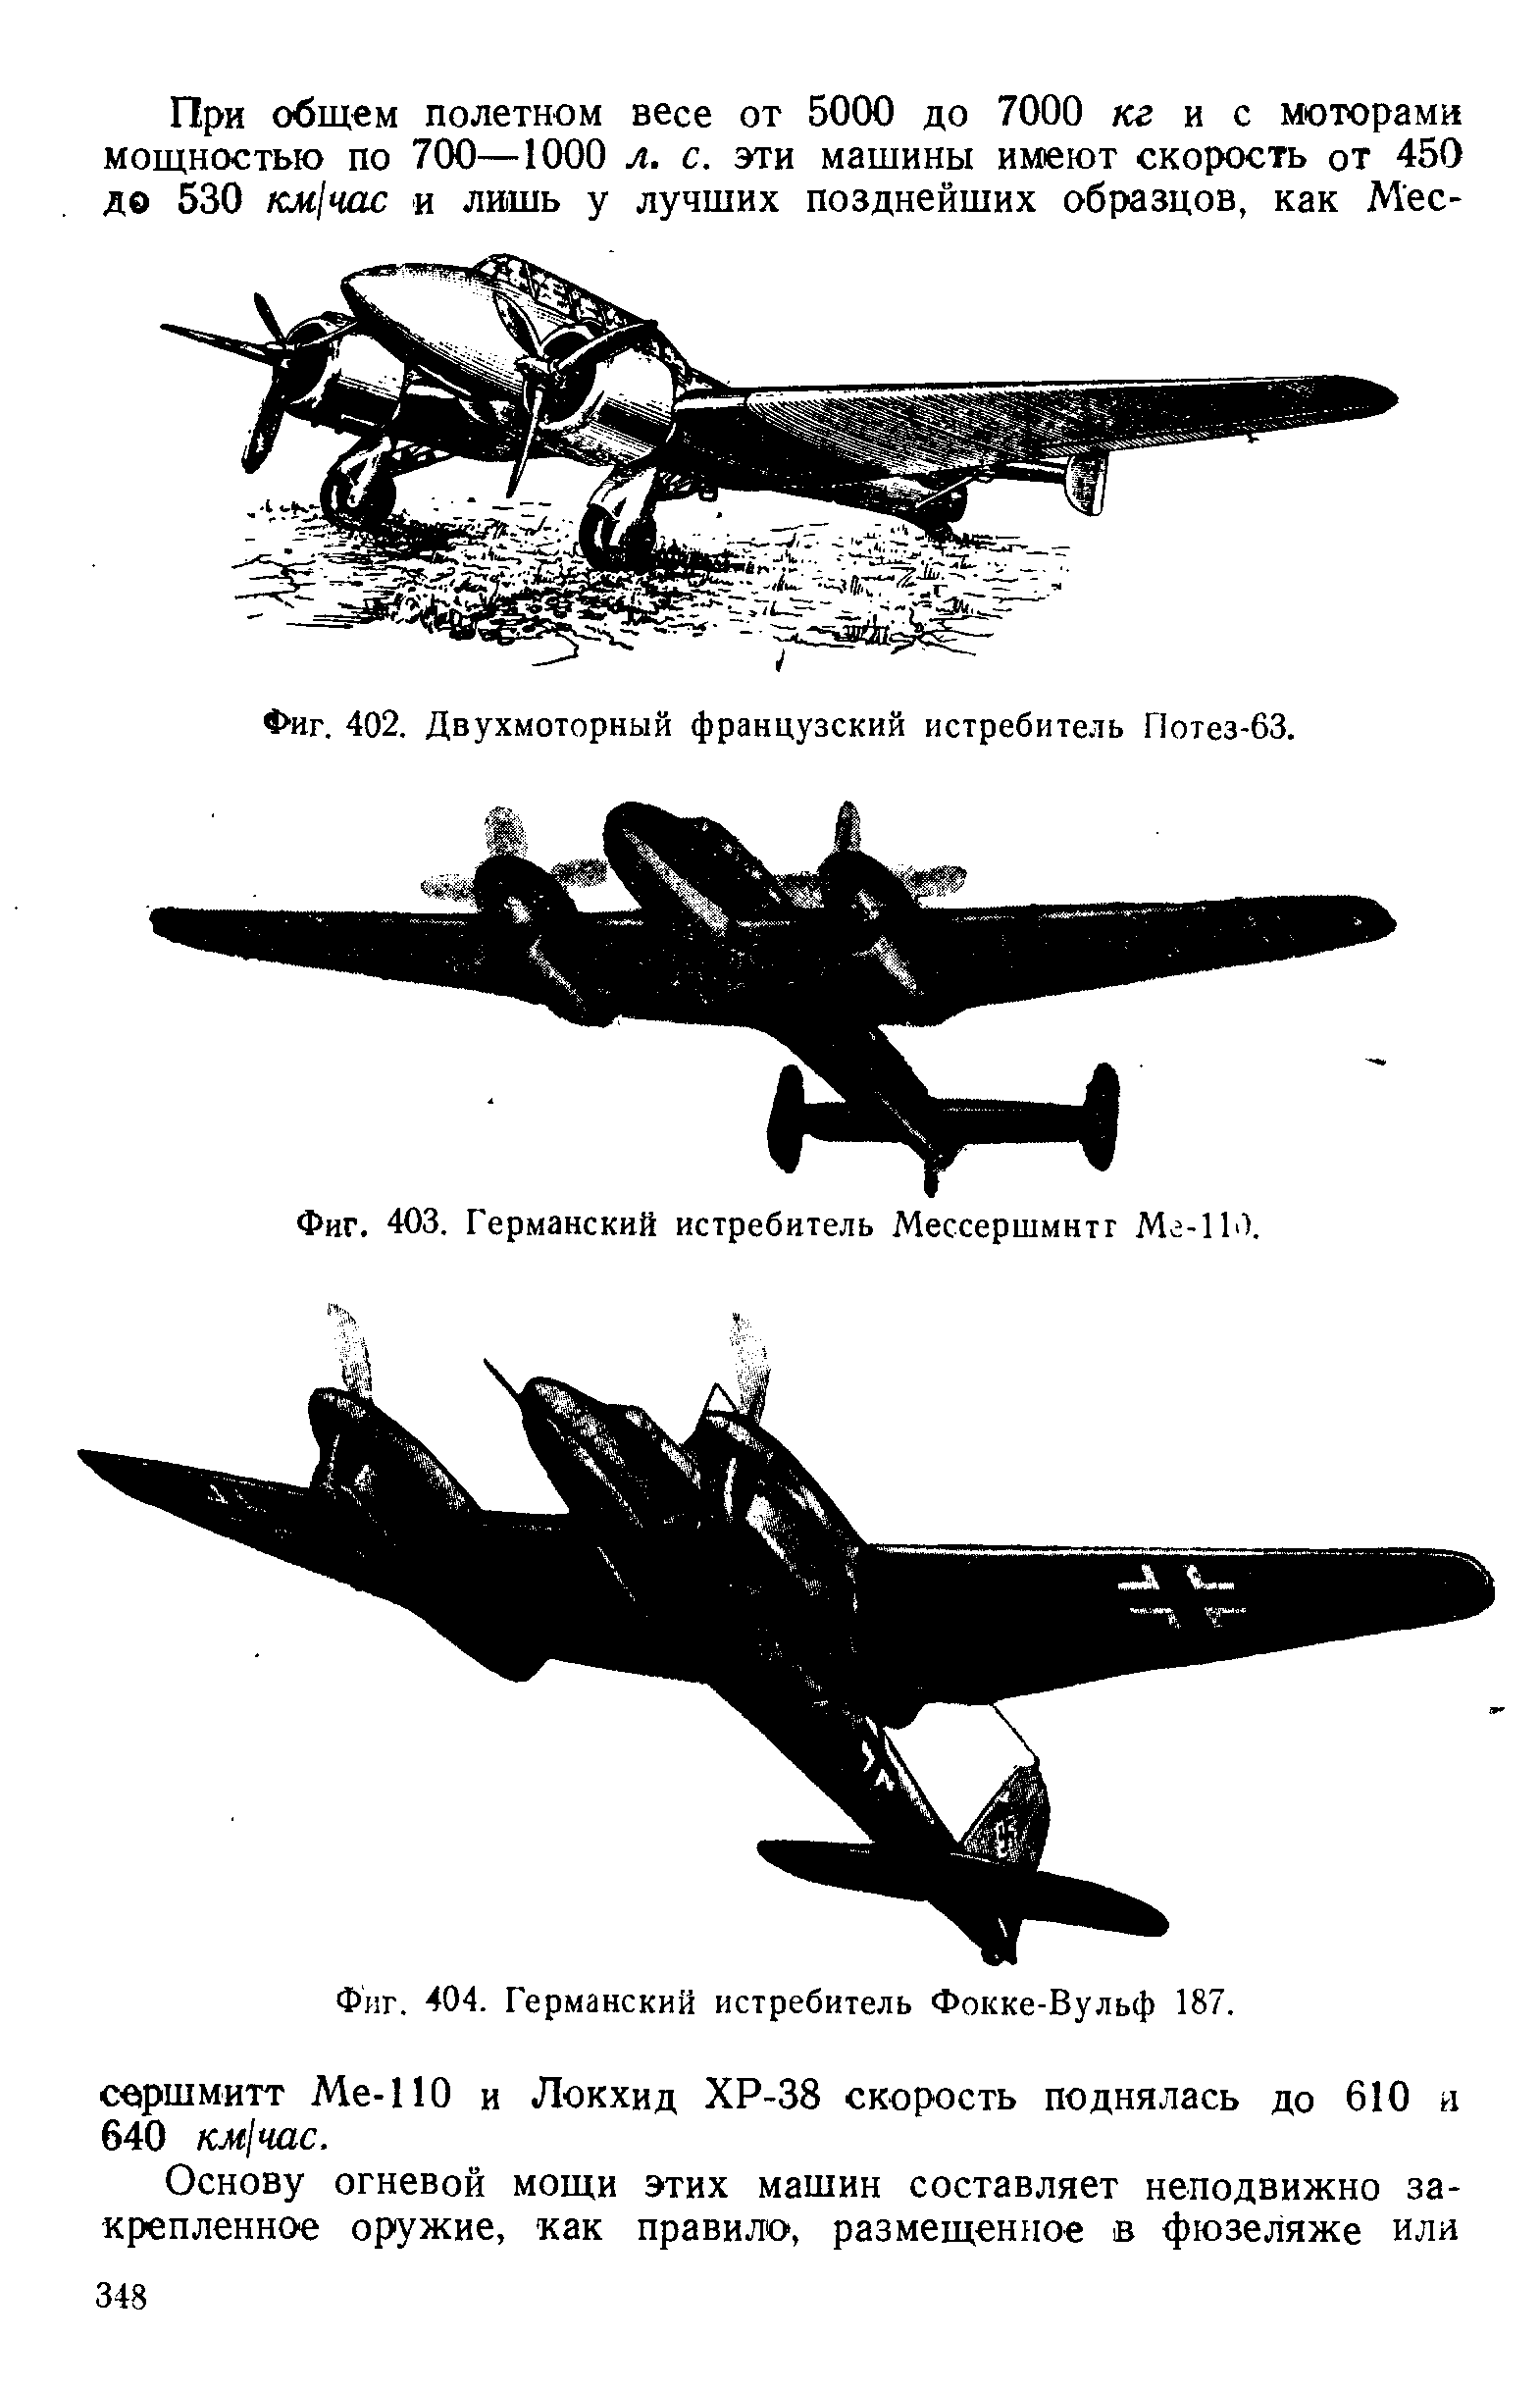 Фиг. 404. Германский истребитель Фокке-Вульф 187.
